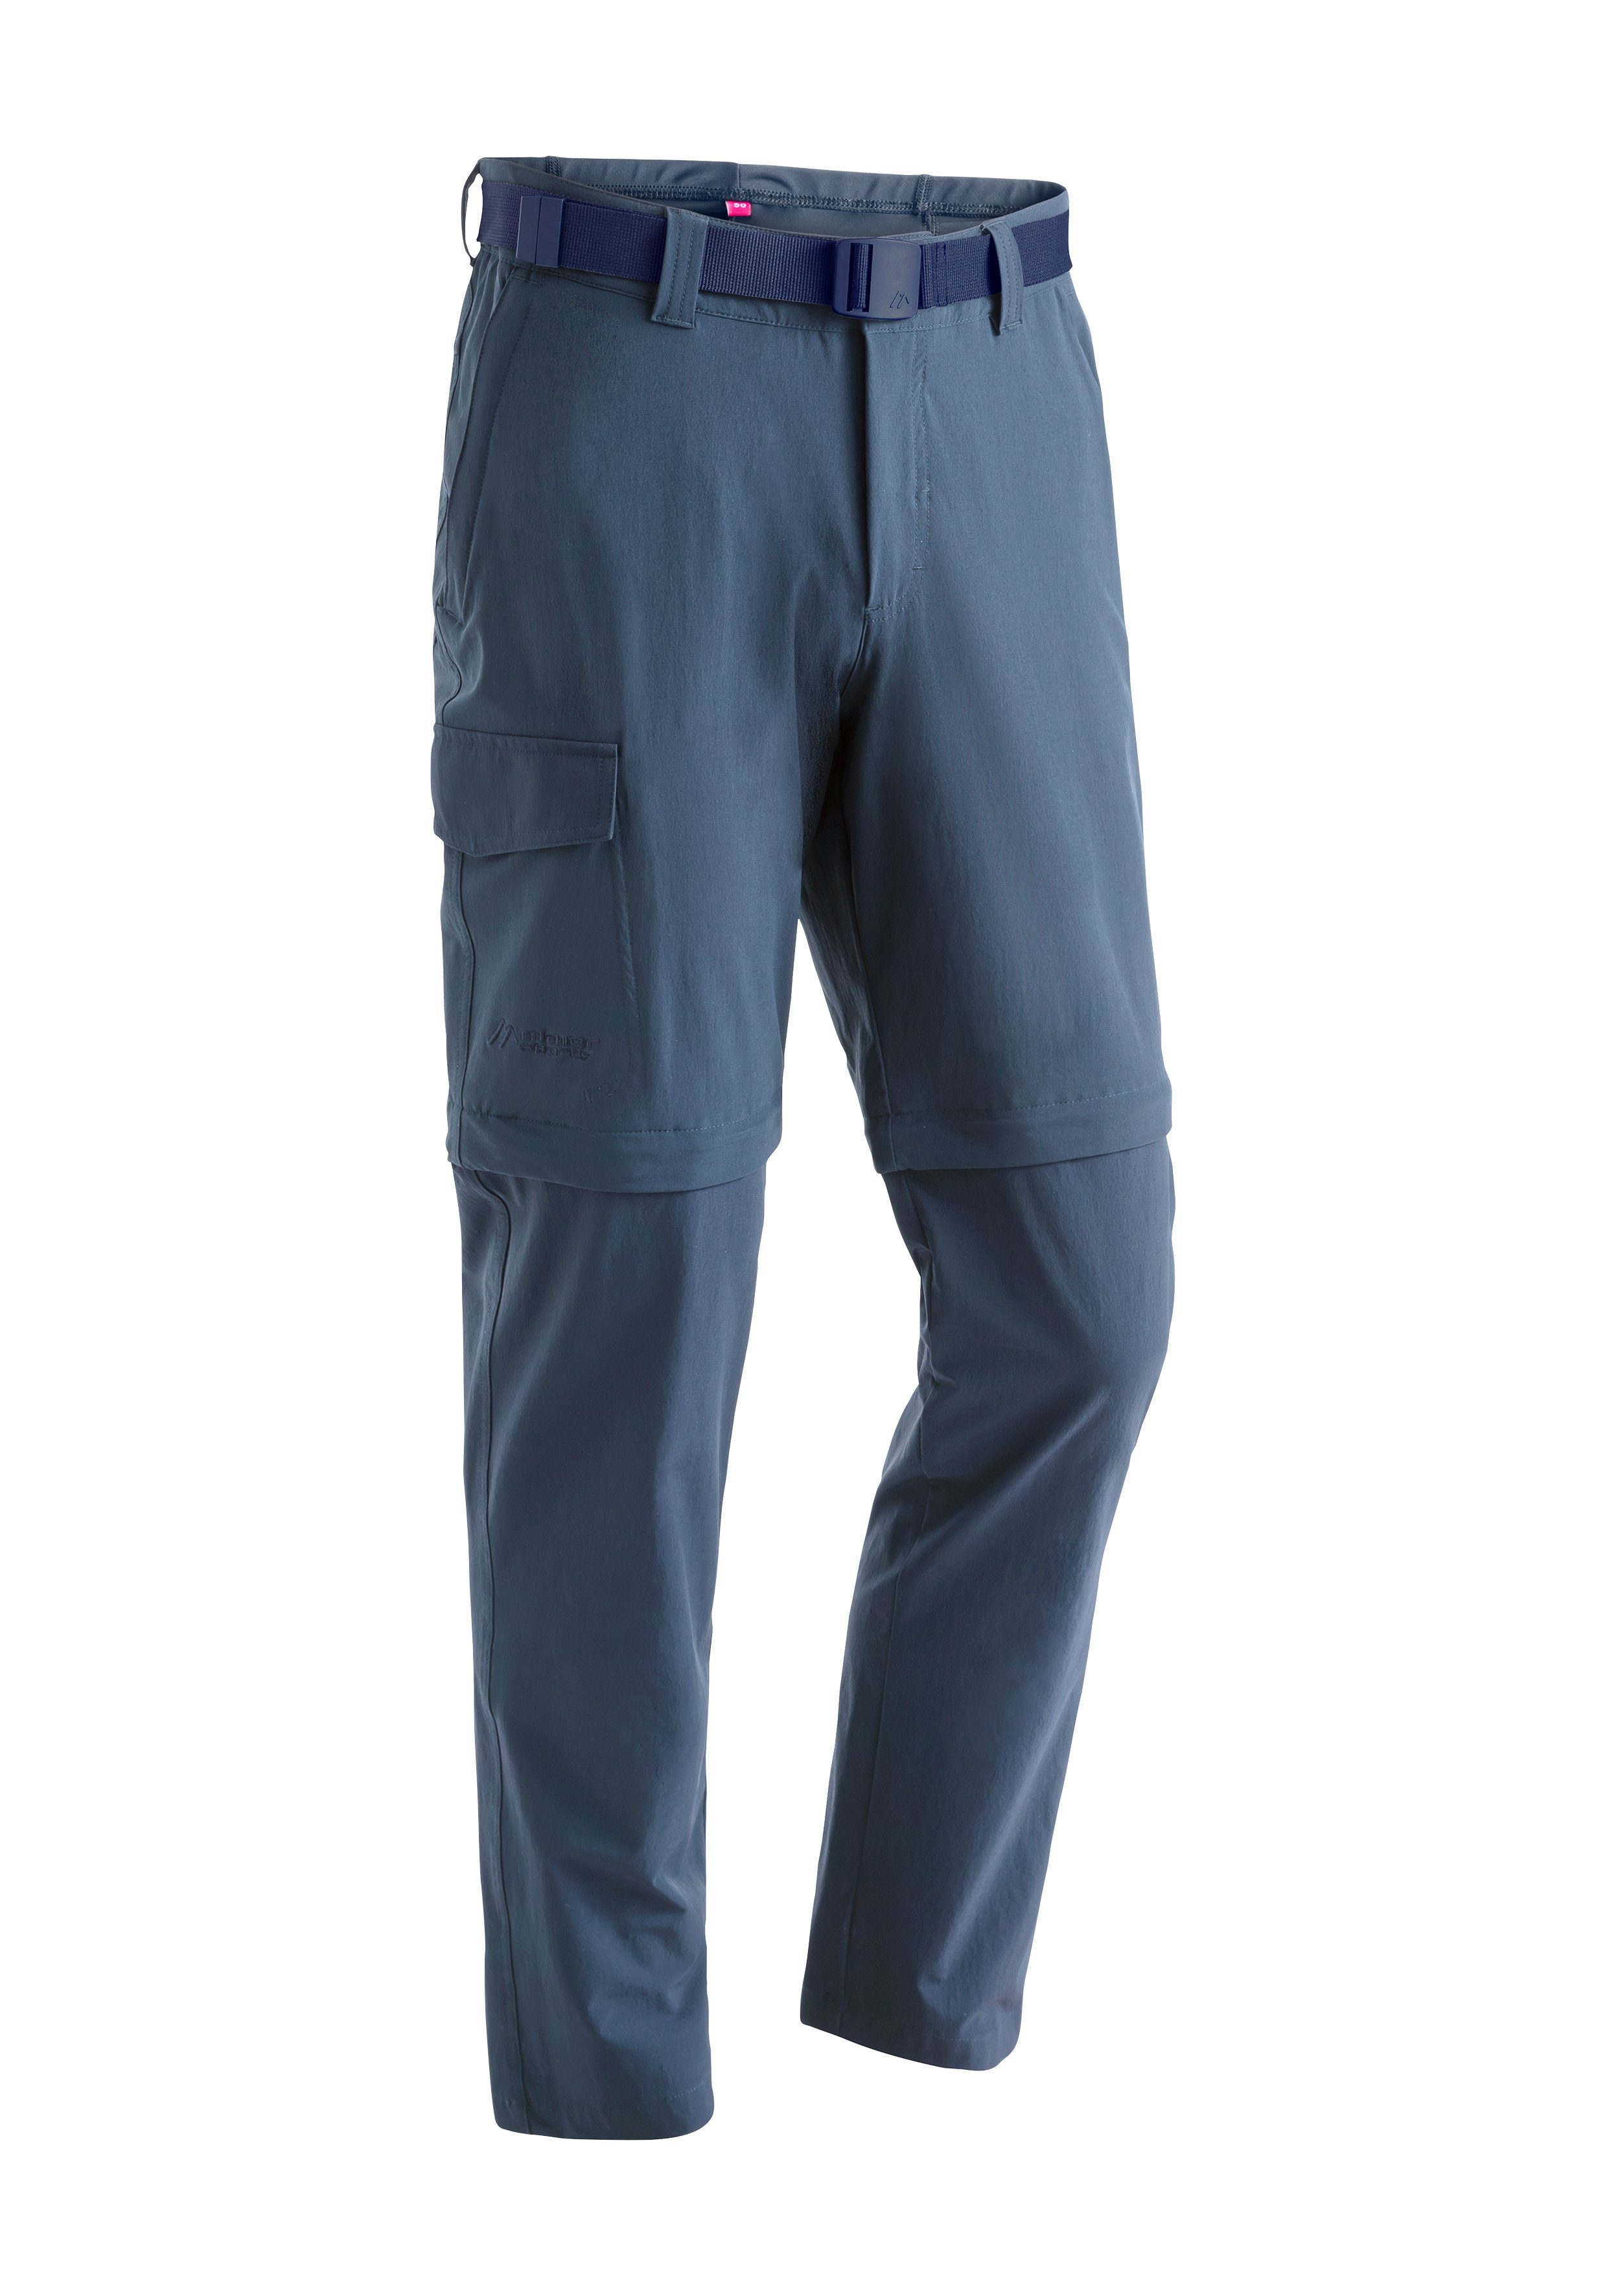 Maier Sports Funktionshose Torid slim zip Herren zipp-off Wanderhose, atmungsaktive Outdoor-Hose jeansblau